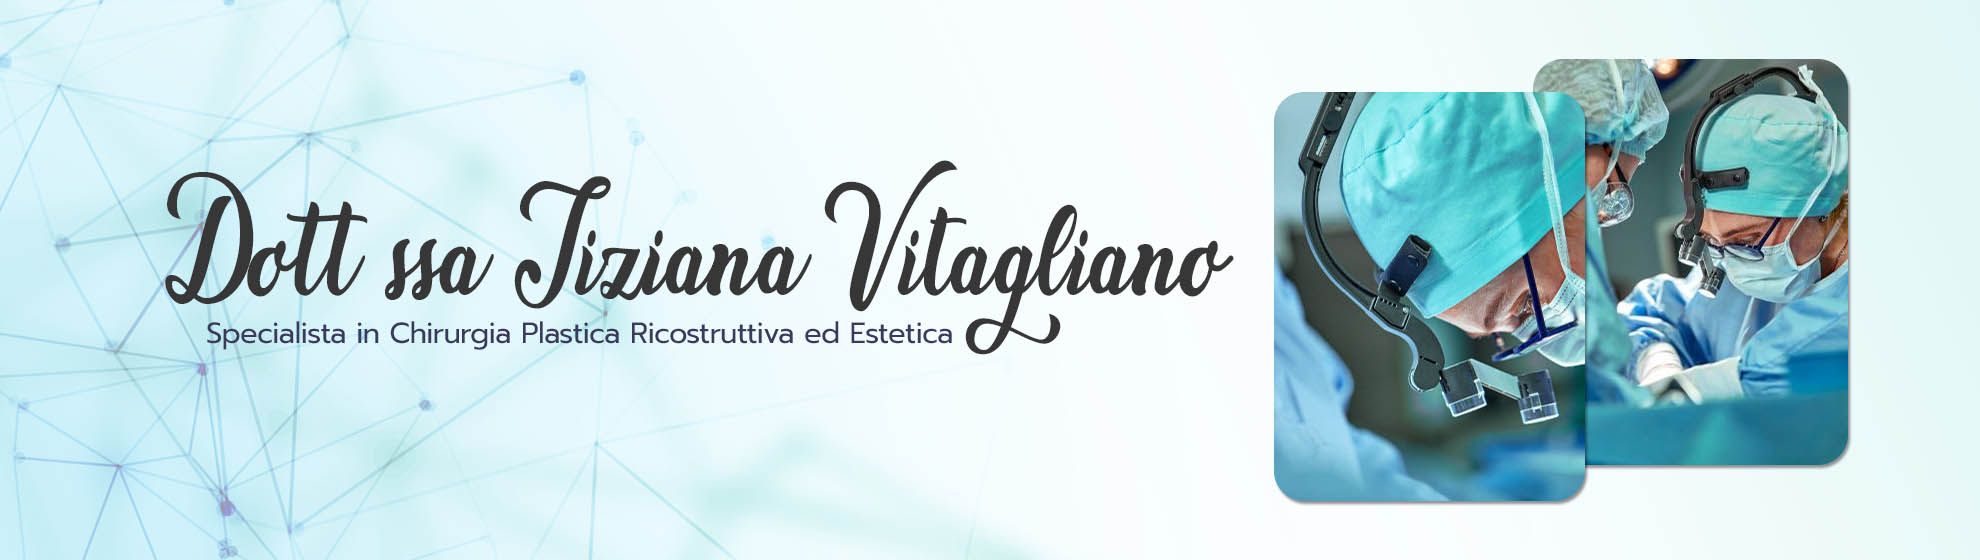 Dott.ssa Tiziana Vitagliano